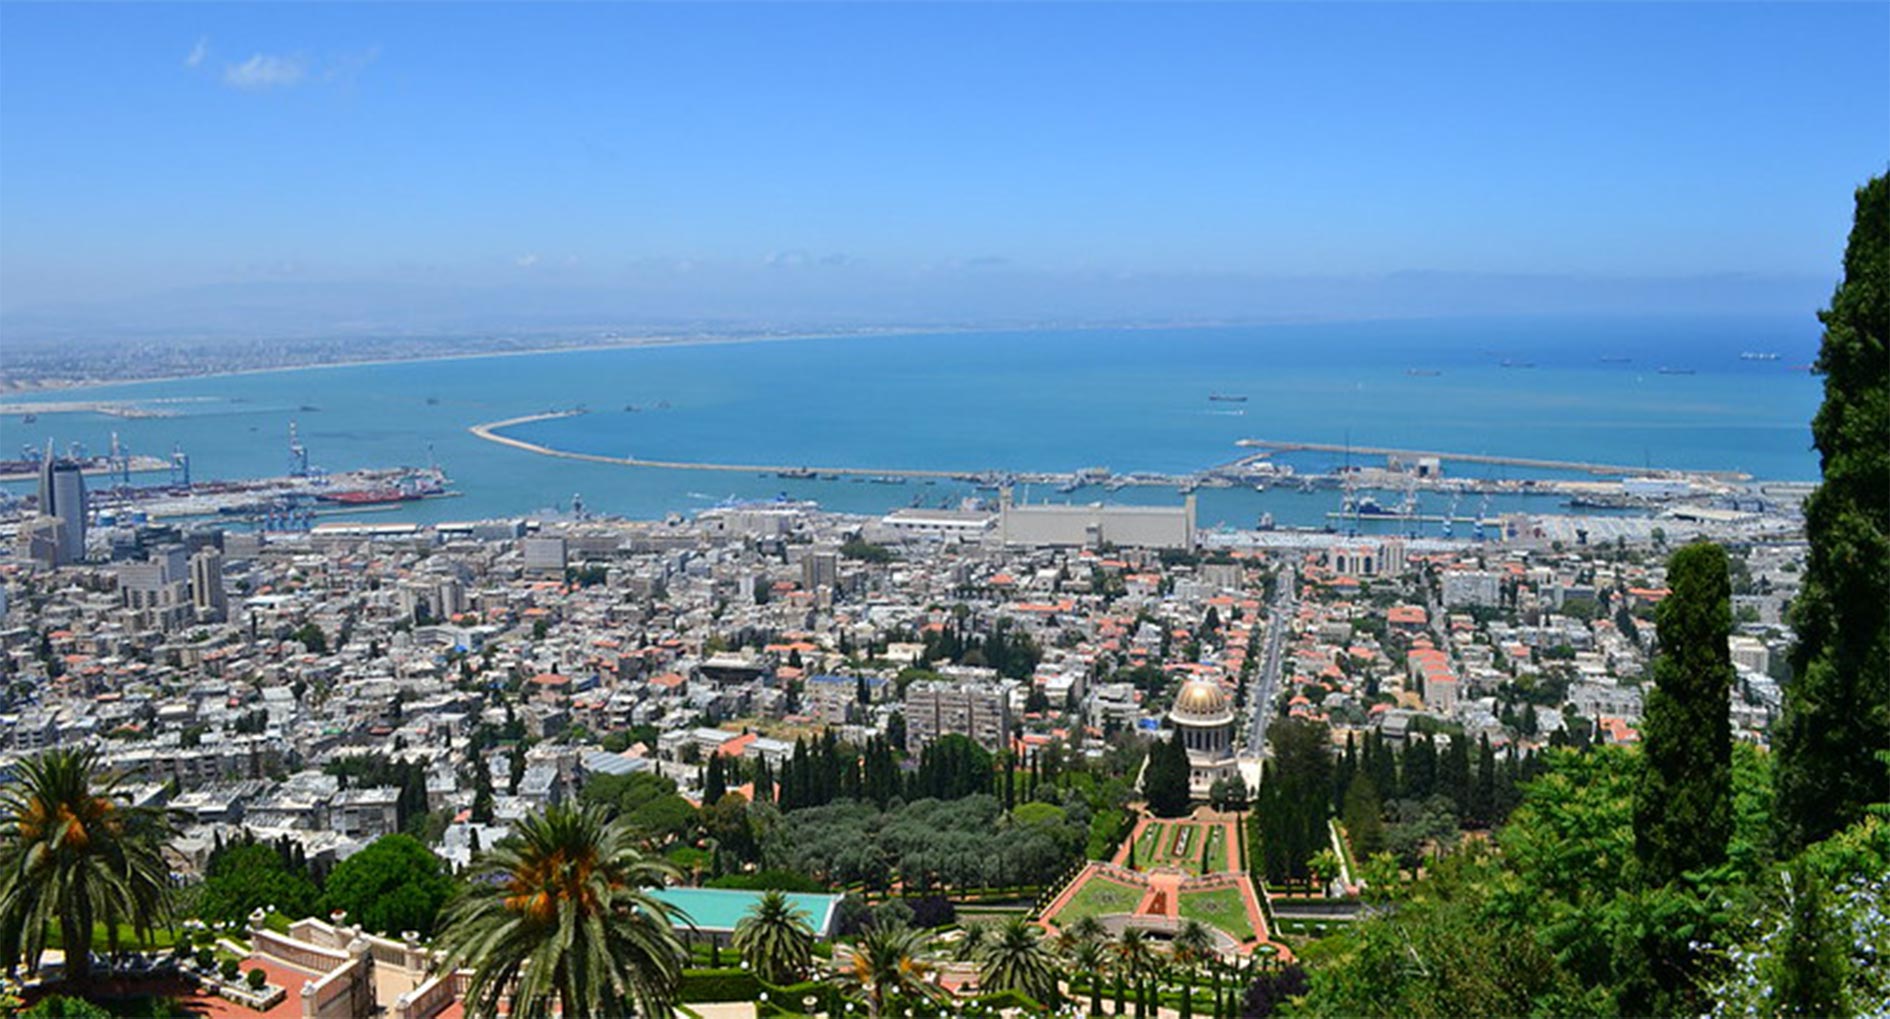 View of the entire Haifa and Haifa Bay from Mount Carmel